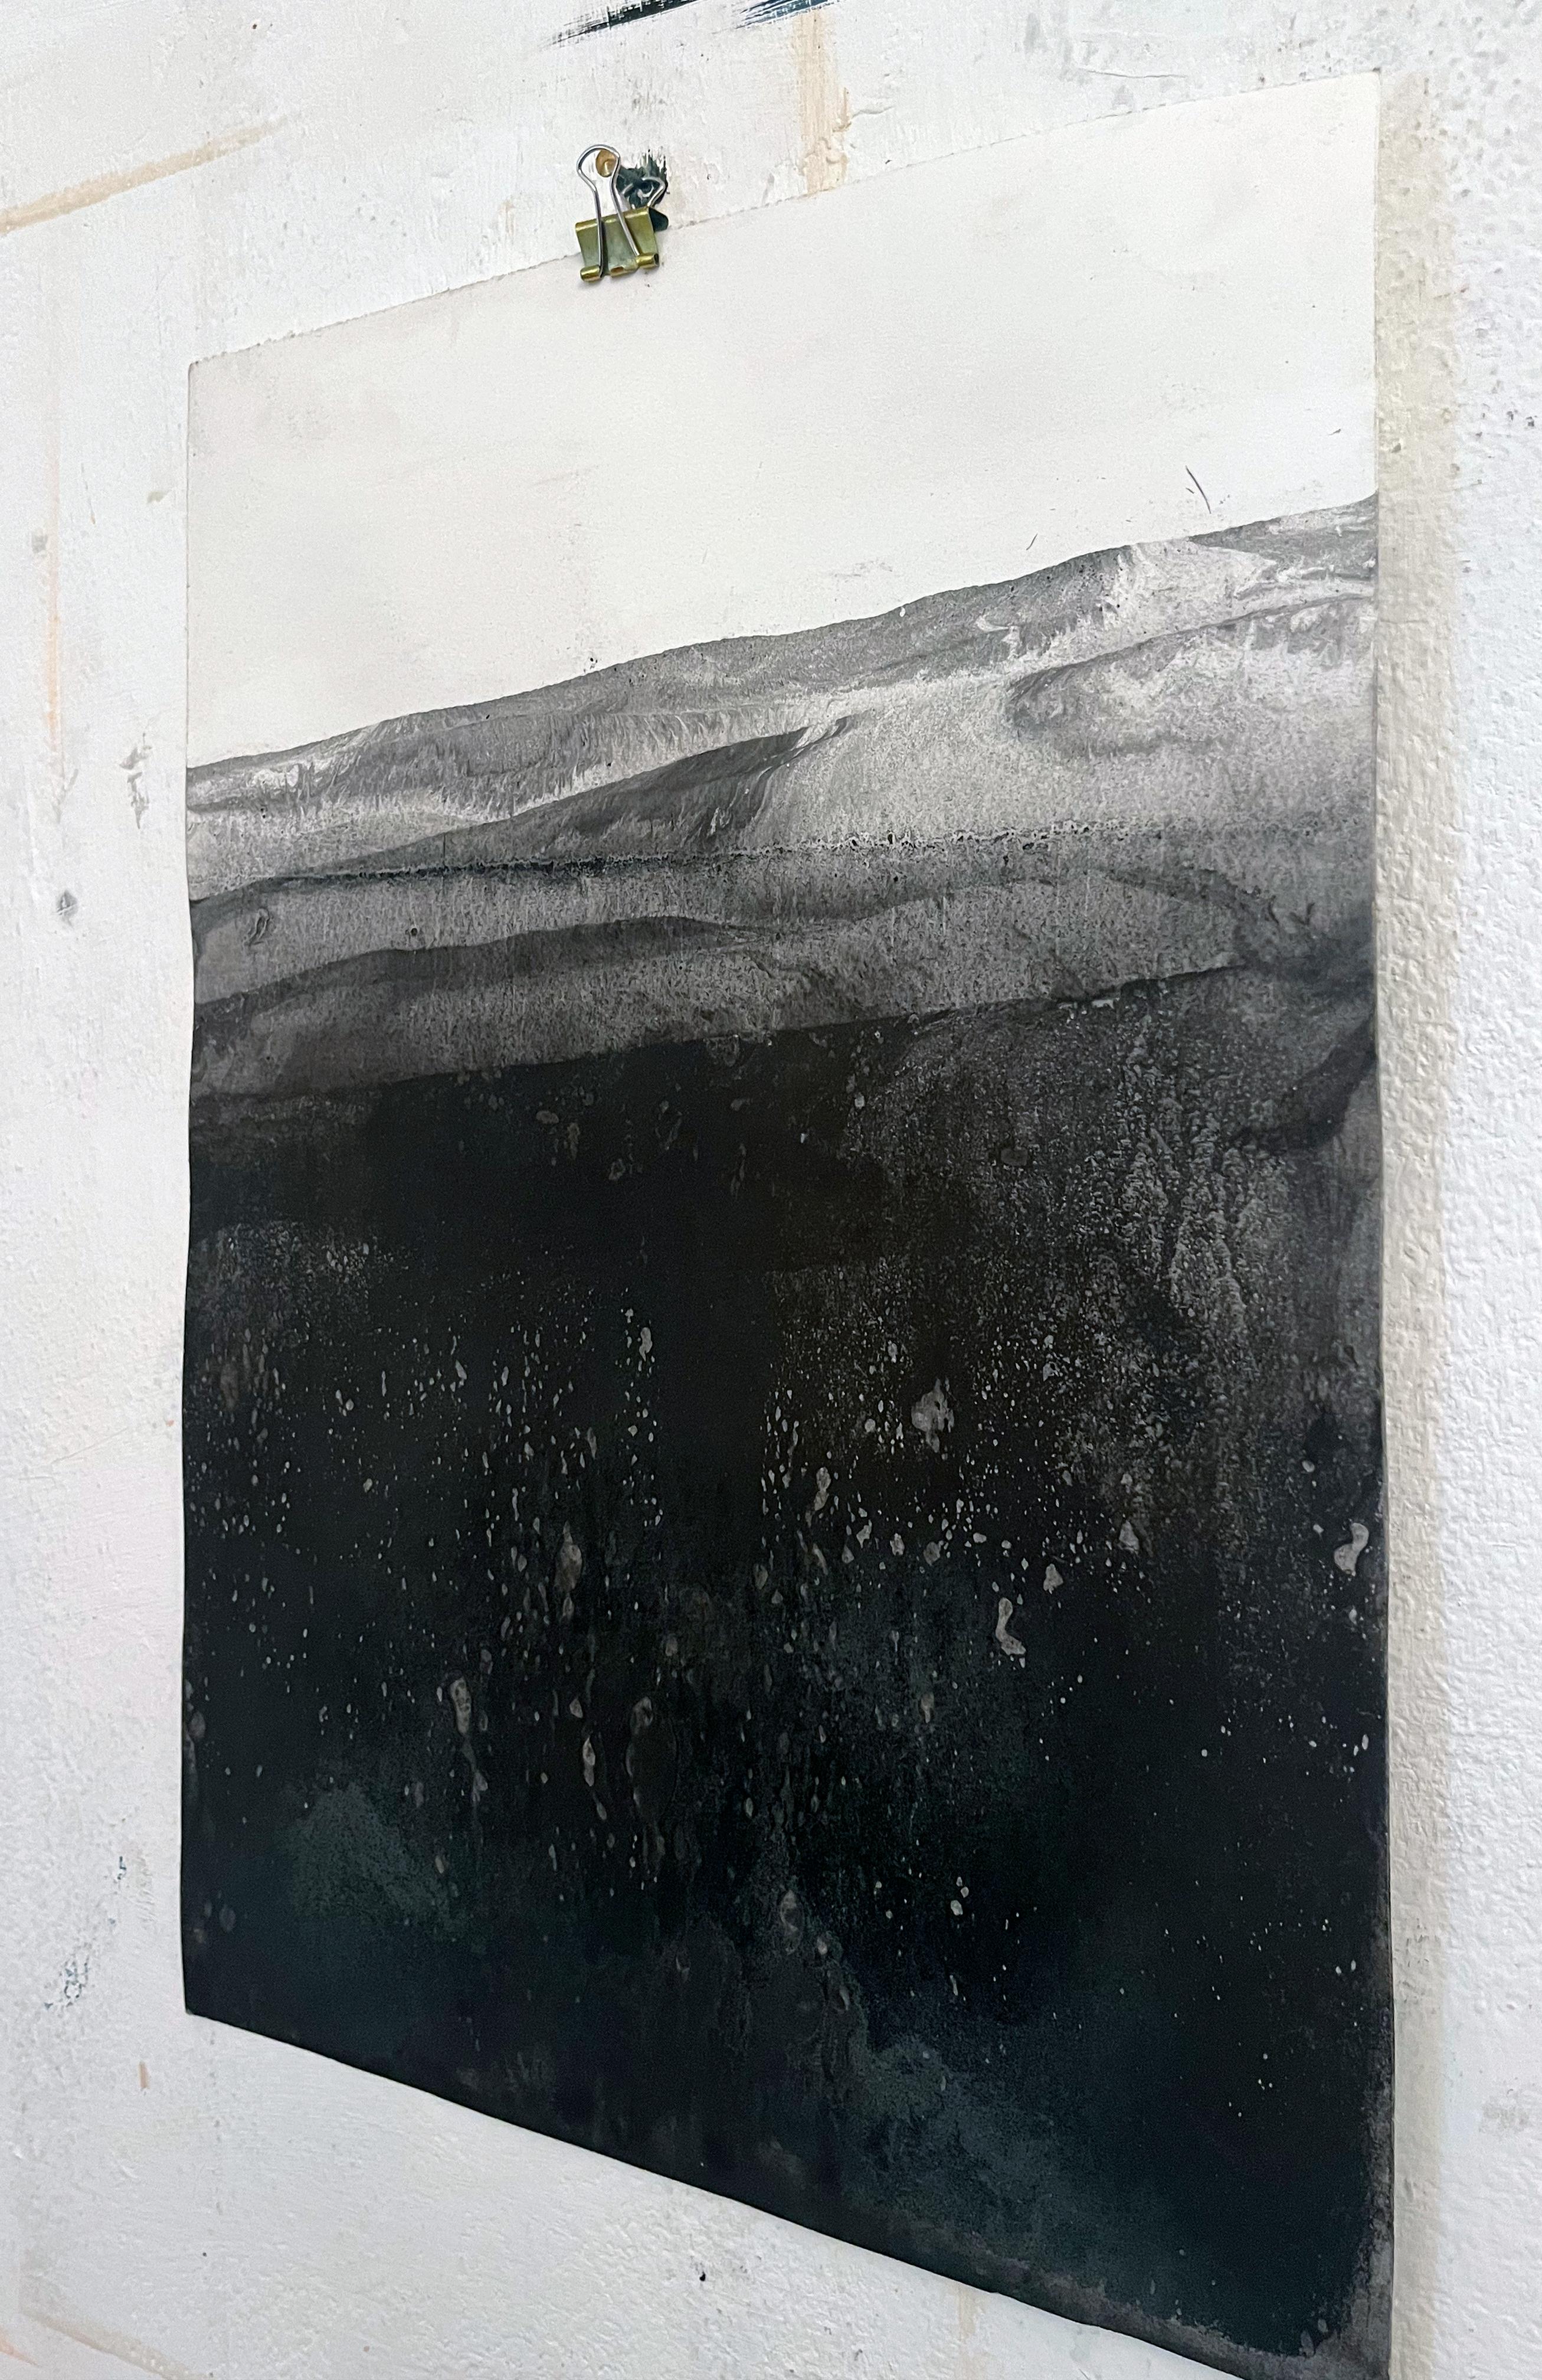 Landschaft
Mineraloxid auf Papier (Canson Paper 300gr)
30x40 cm
Original Kunst 
Echtheitszertifikat
Unikat

Marilina Marchica, Jahrgang 1984, wurde in Agrigento geboren, wo sie lebt und arbeitet. Sie schloss ihr Studium der Malerei an der Akademie